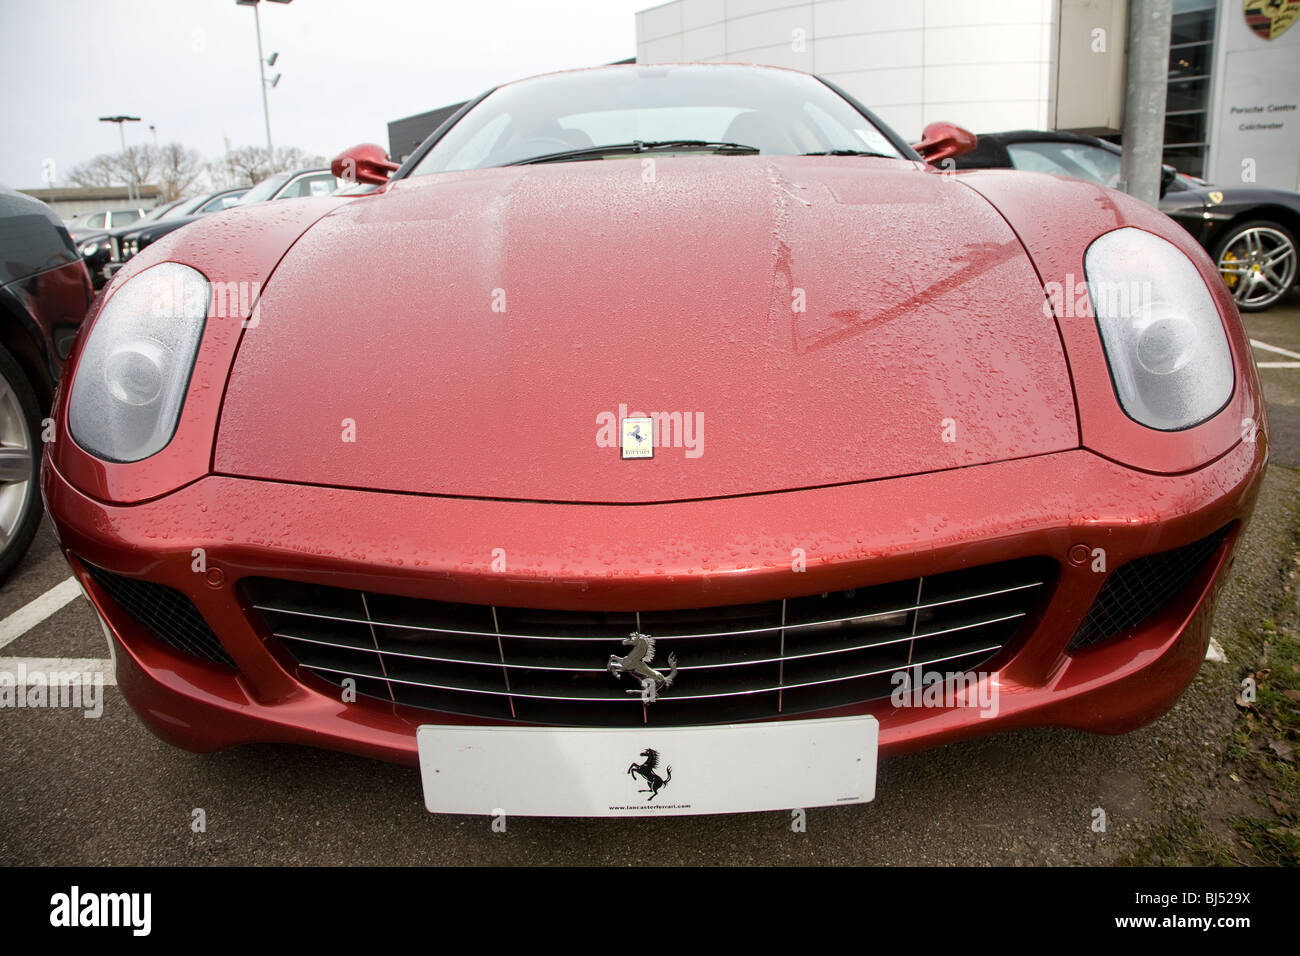 Nouvelle voiture Ferrari rouge sur les ventes avant-cour Banque D'Images